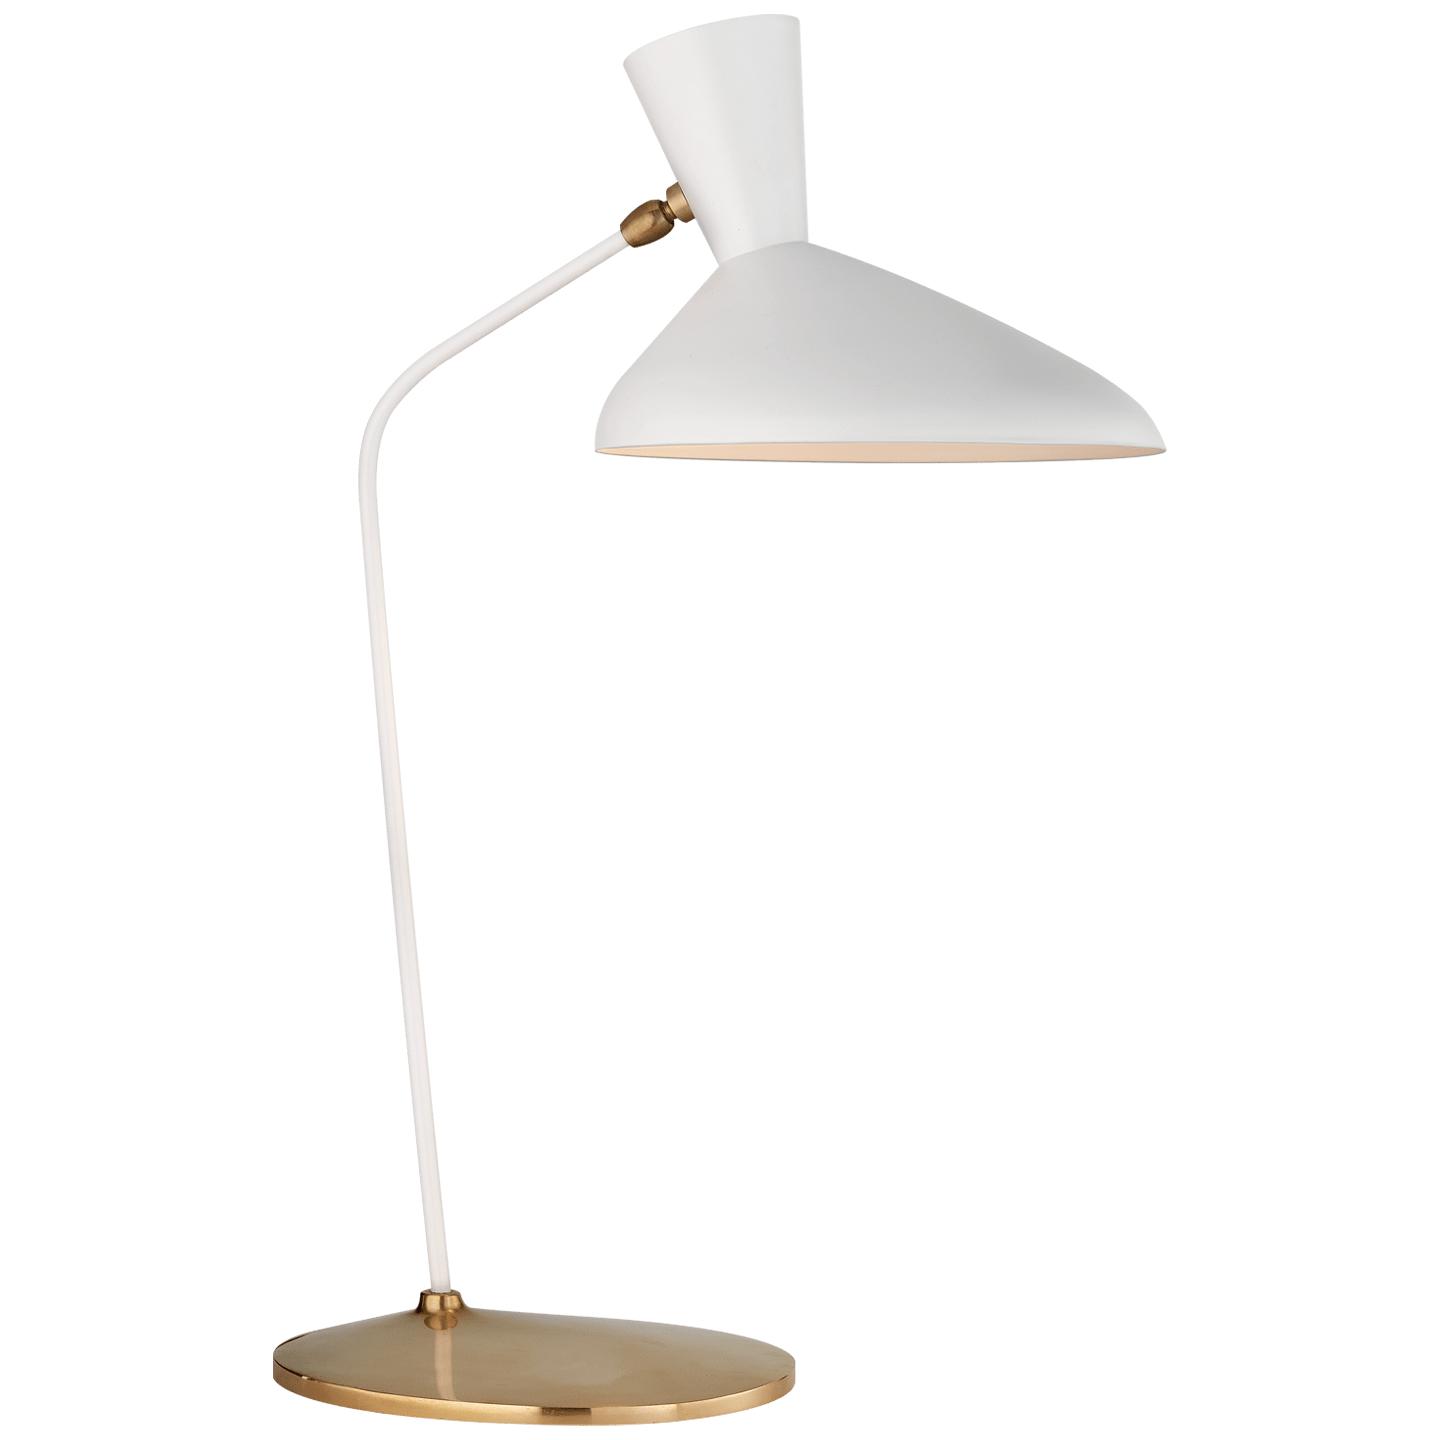 Купить Настольная лампа Austen Large Offset Table Lamp в интернет-магазине roooms.ru